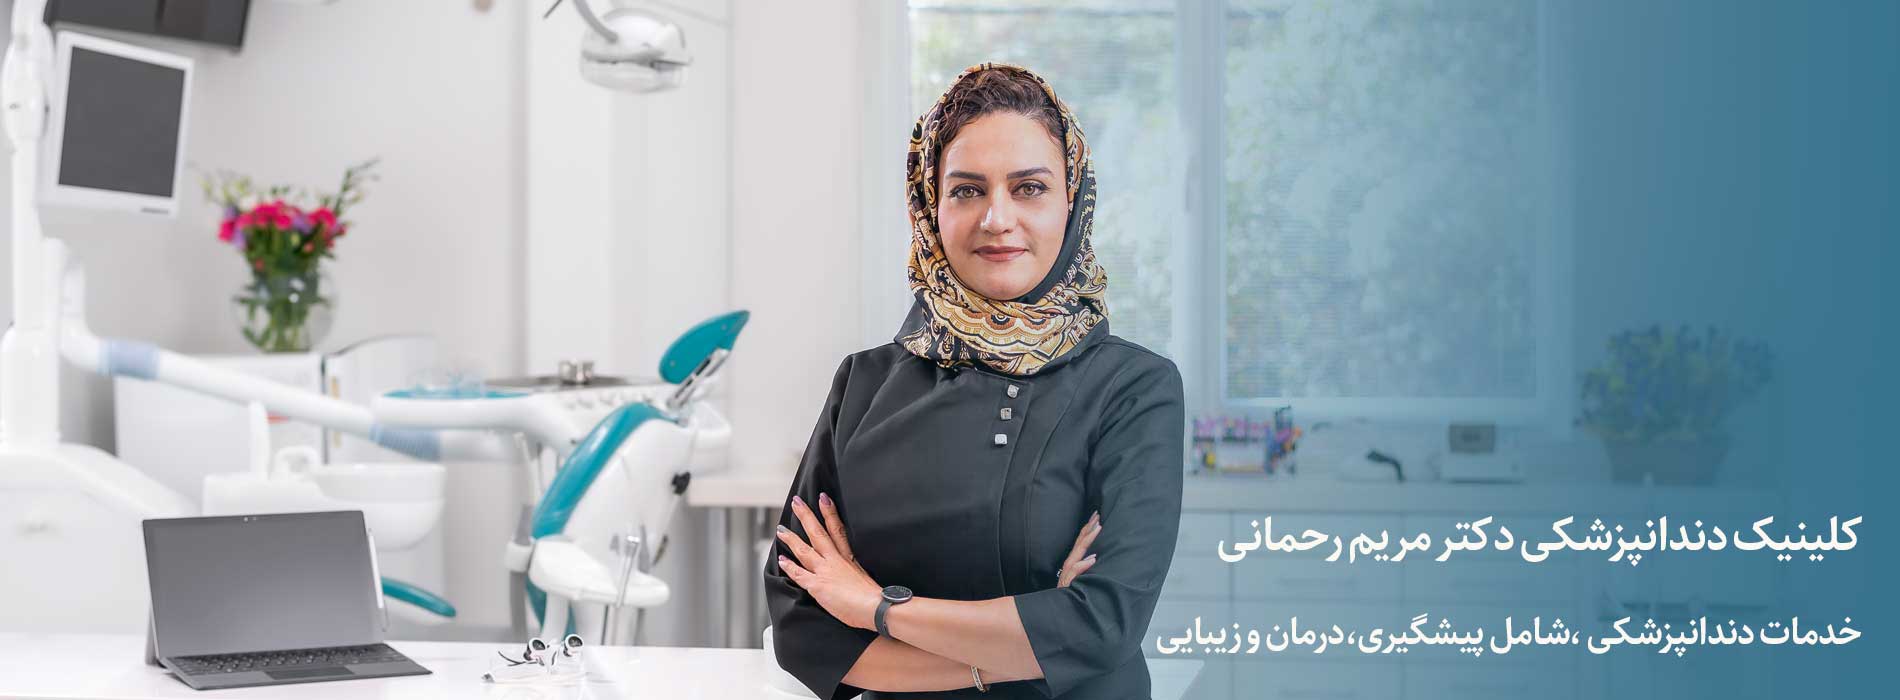 کلینیک دندانپزشکی دکتر مریم رحمانی